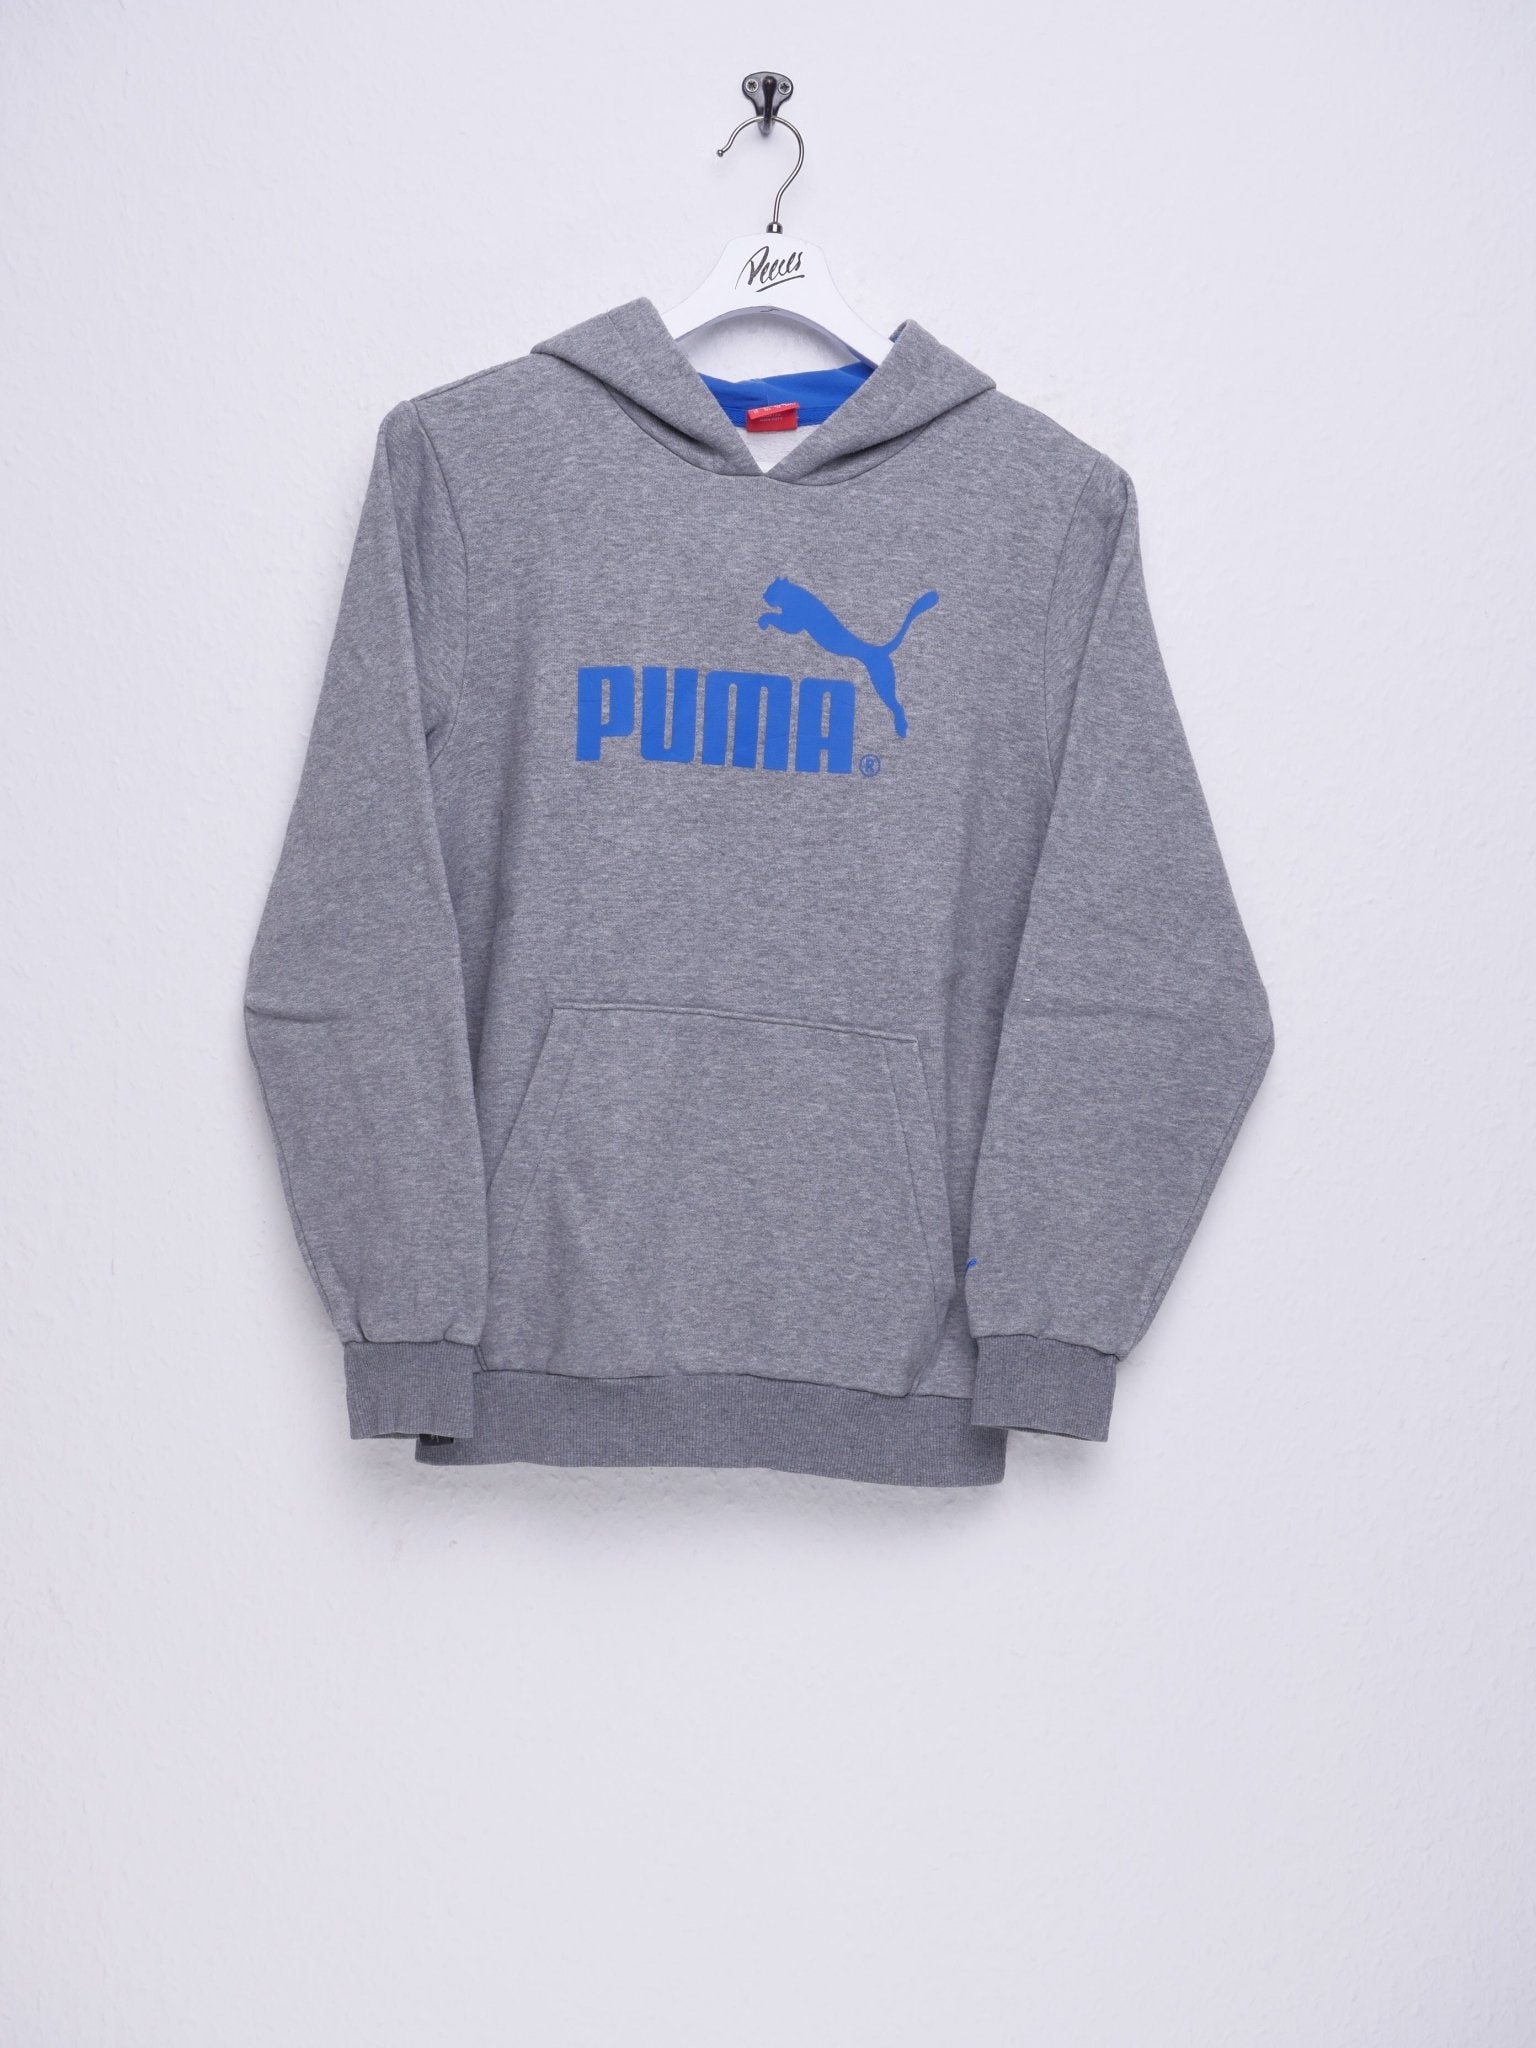 Puma embroidered Logo Vintage Hoodie - Peeces